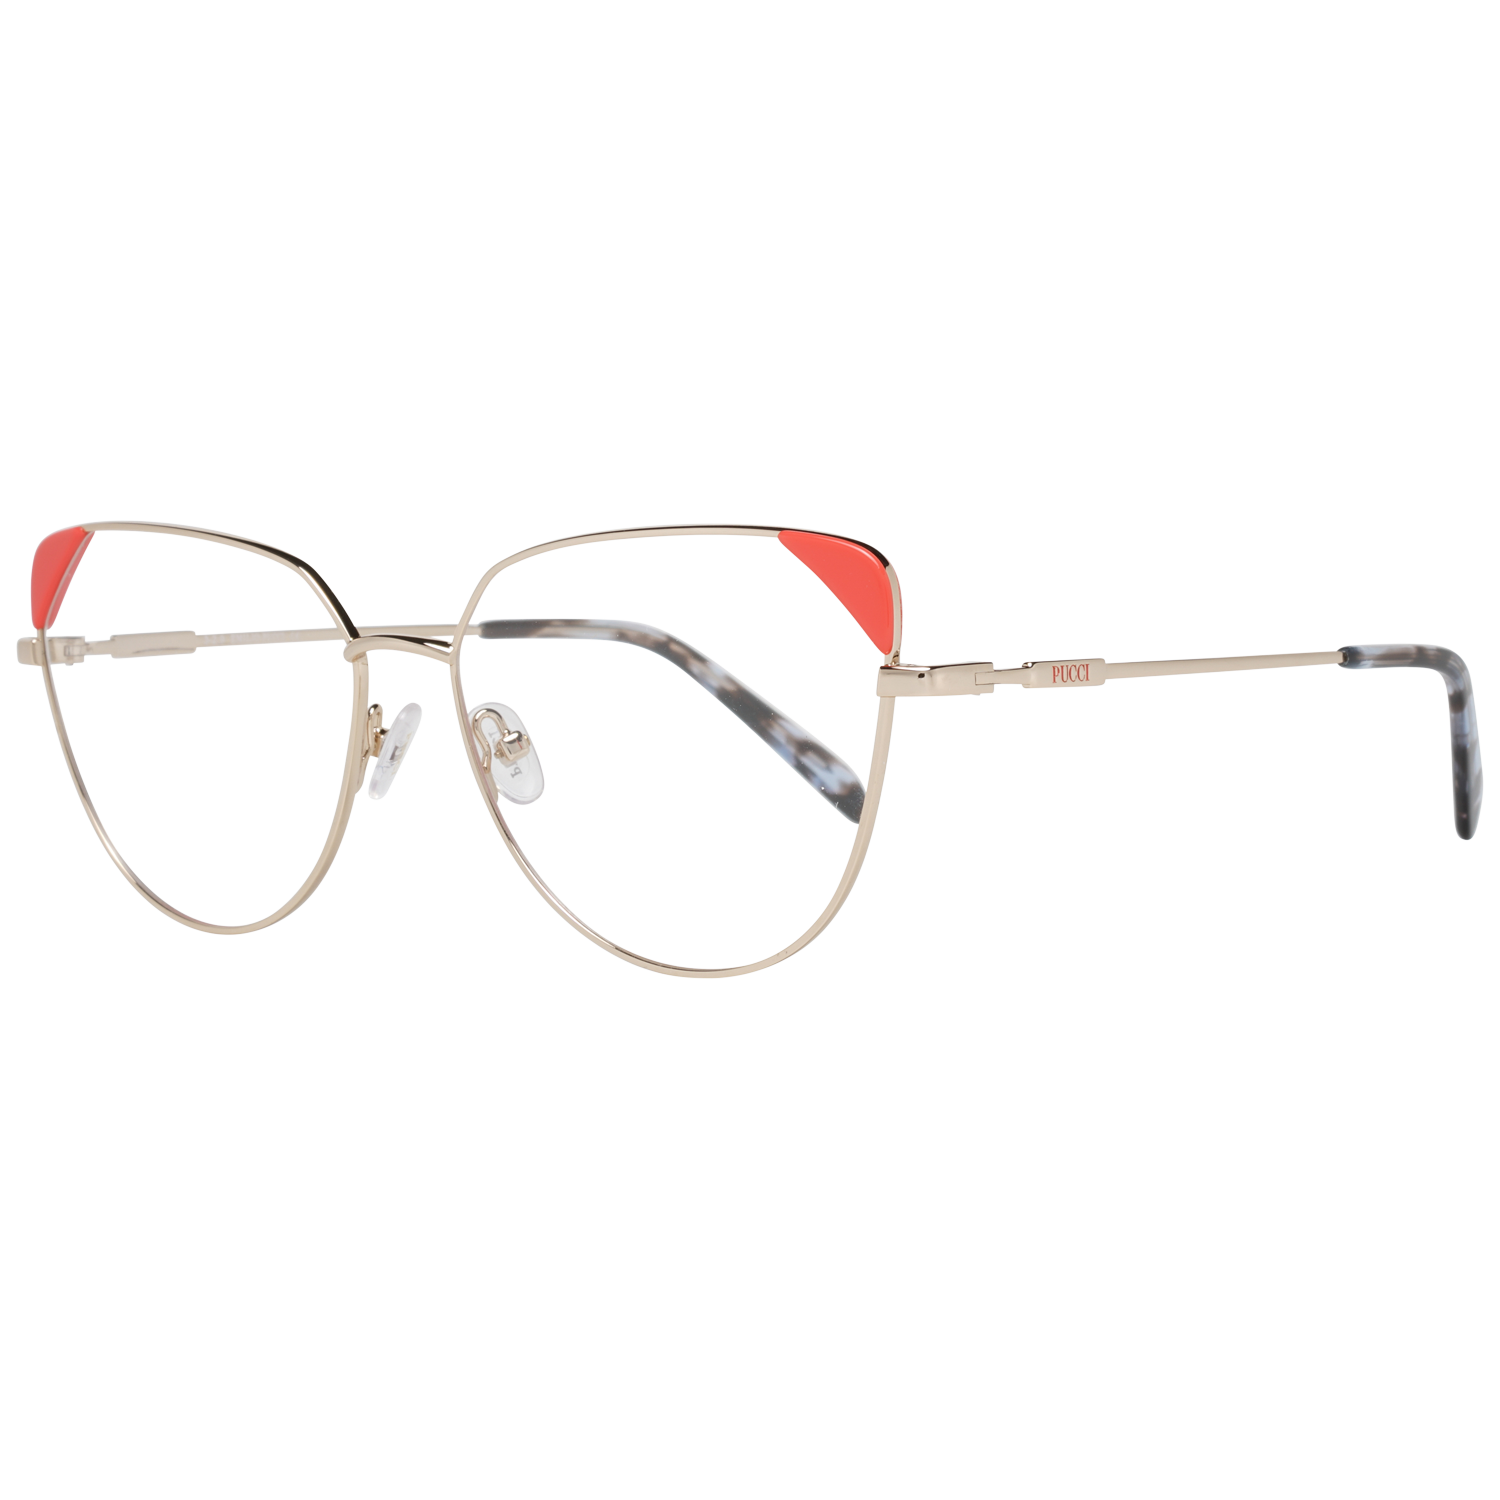 Emilio Pucci Frames Emilio Pucci Optical Frame EP5112 028 57 Eyeglasses Eyewear UK USA Australia 